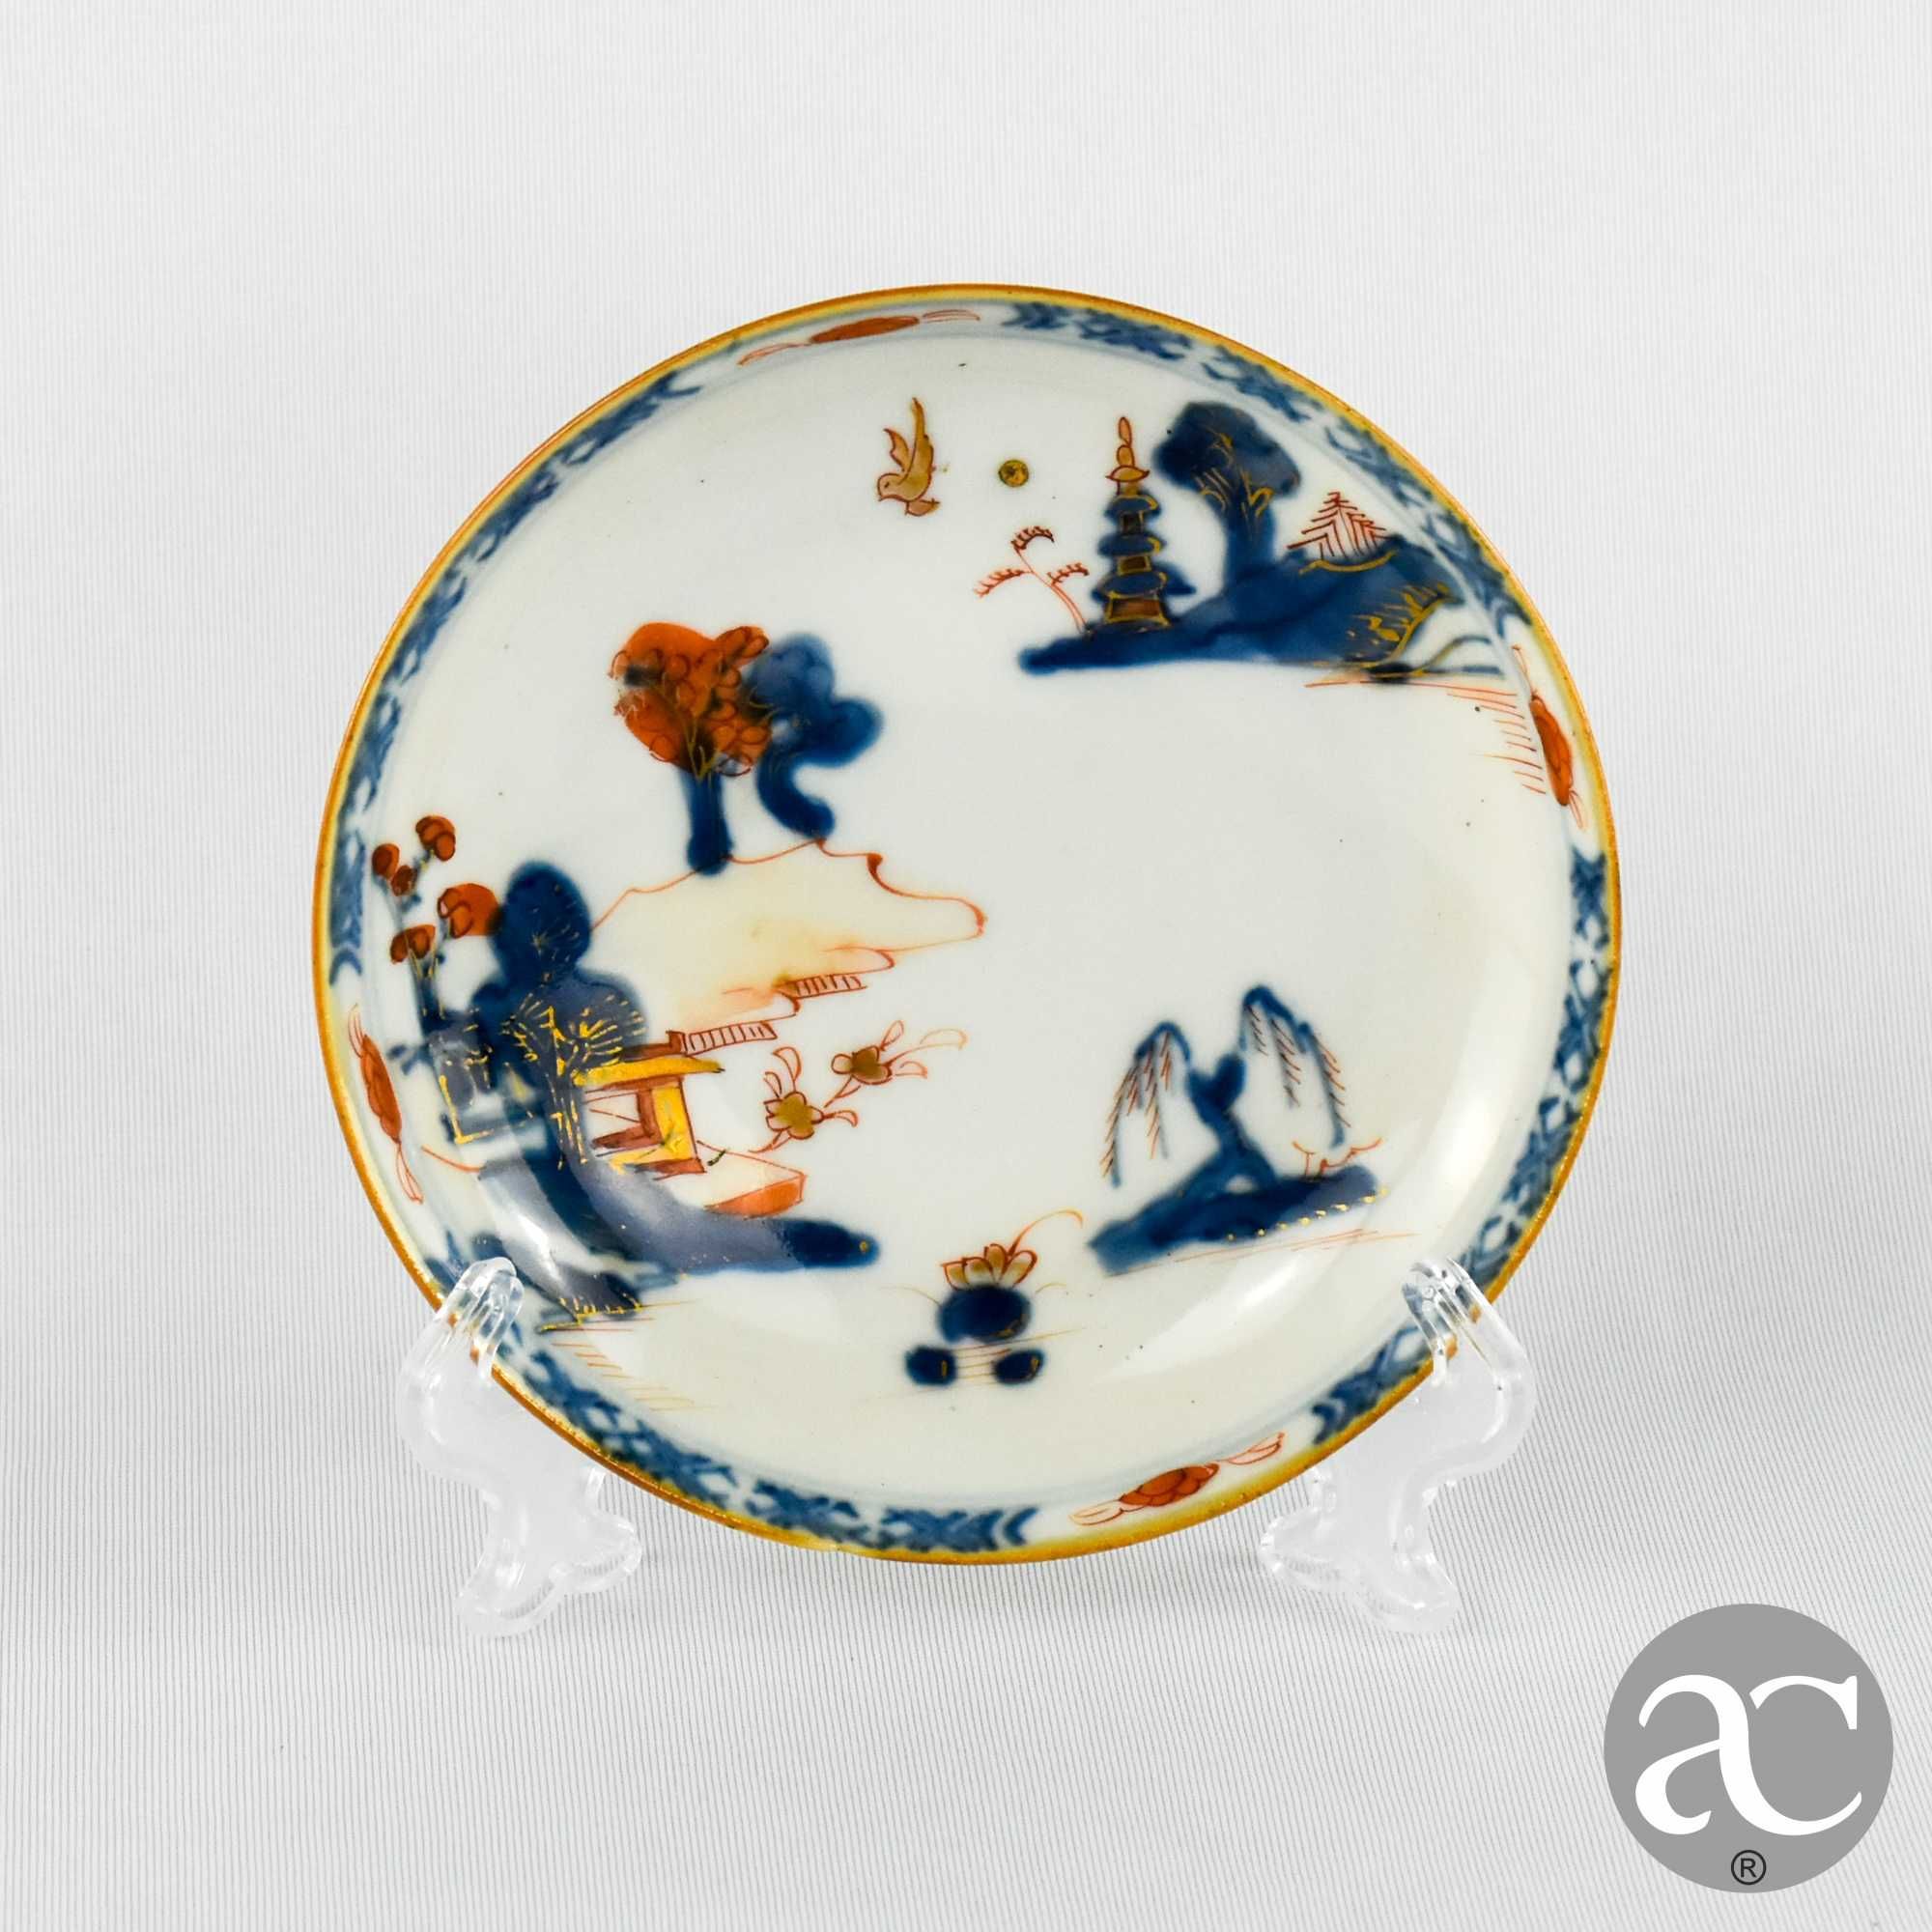 Covilhete / Prato Porcelana da China, Imari, Kangxi, séc. XVII / XVIII